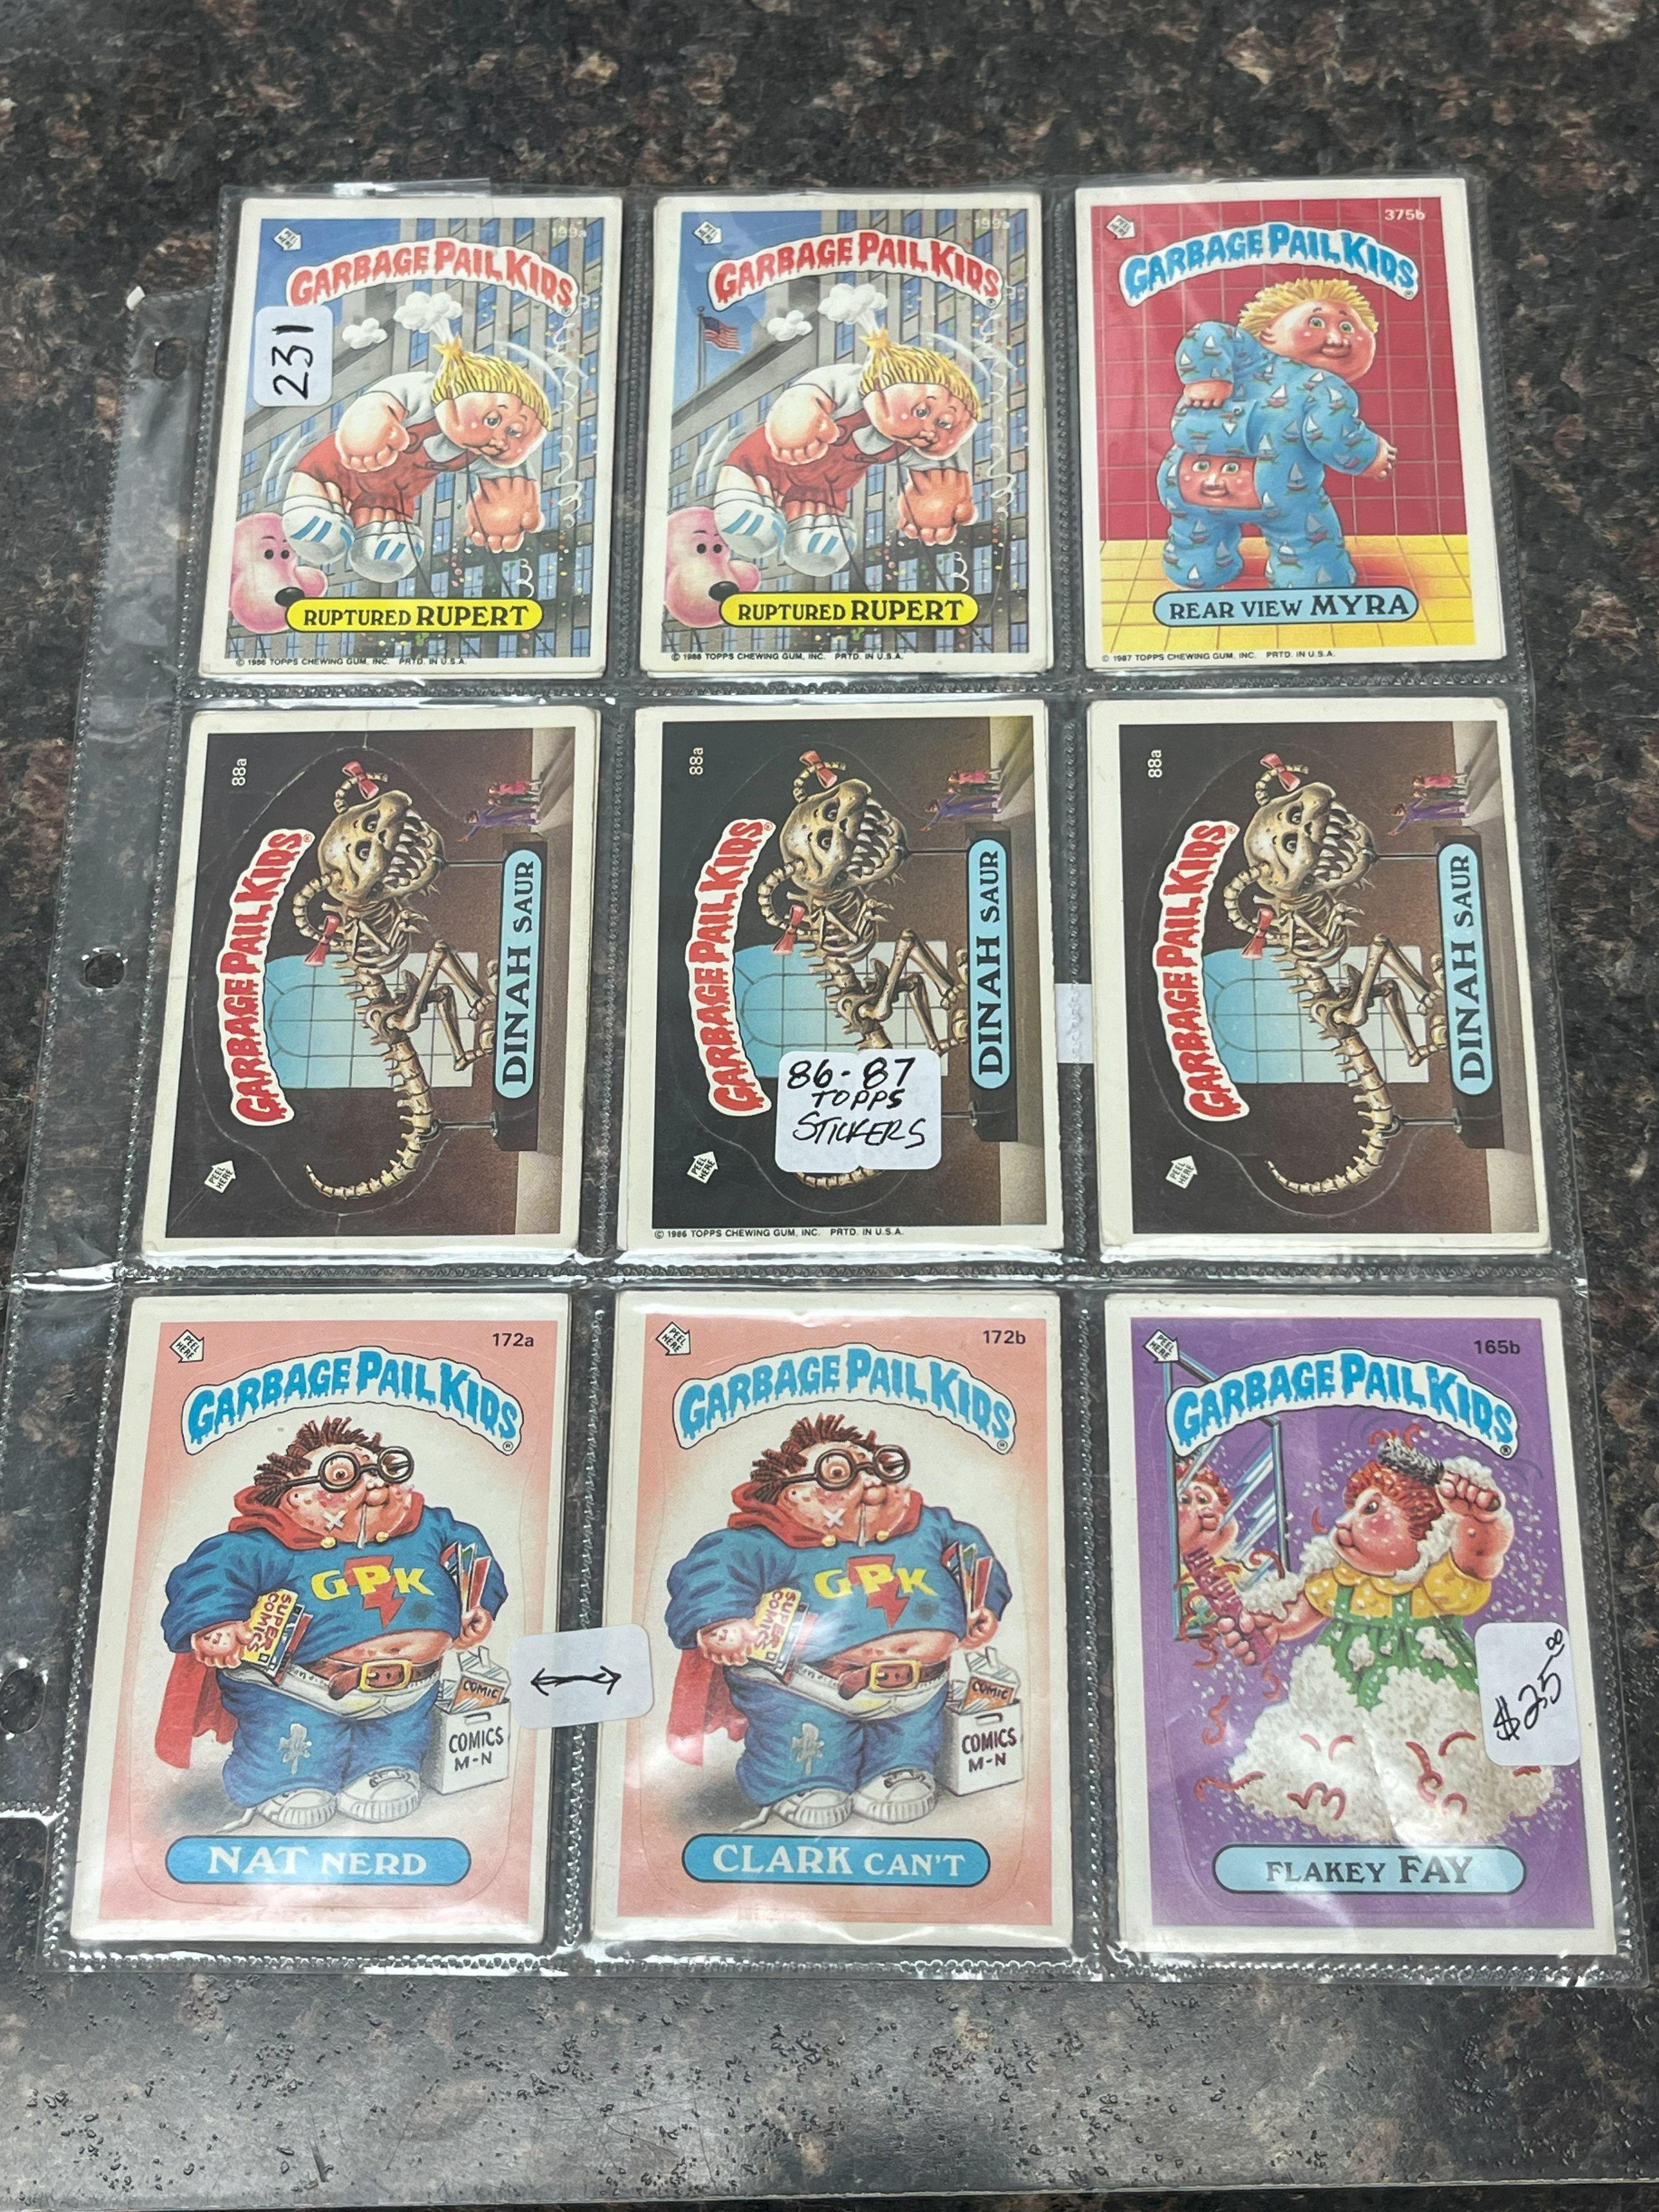 (18) 86-87 Topps Garbage Pail Kids Stickers